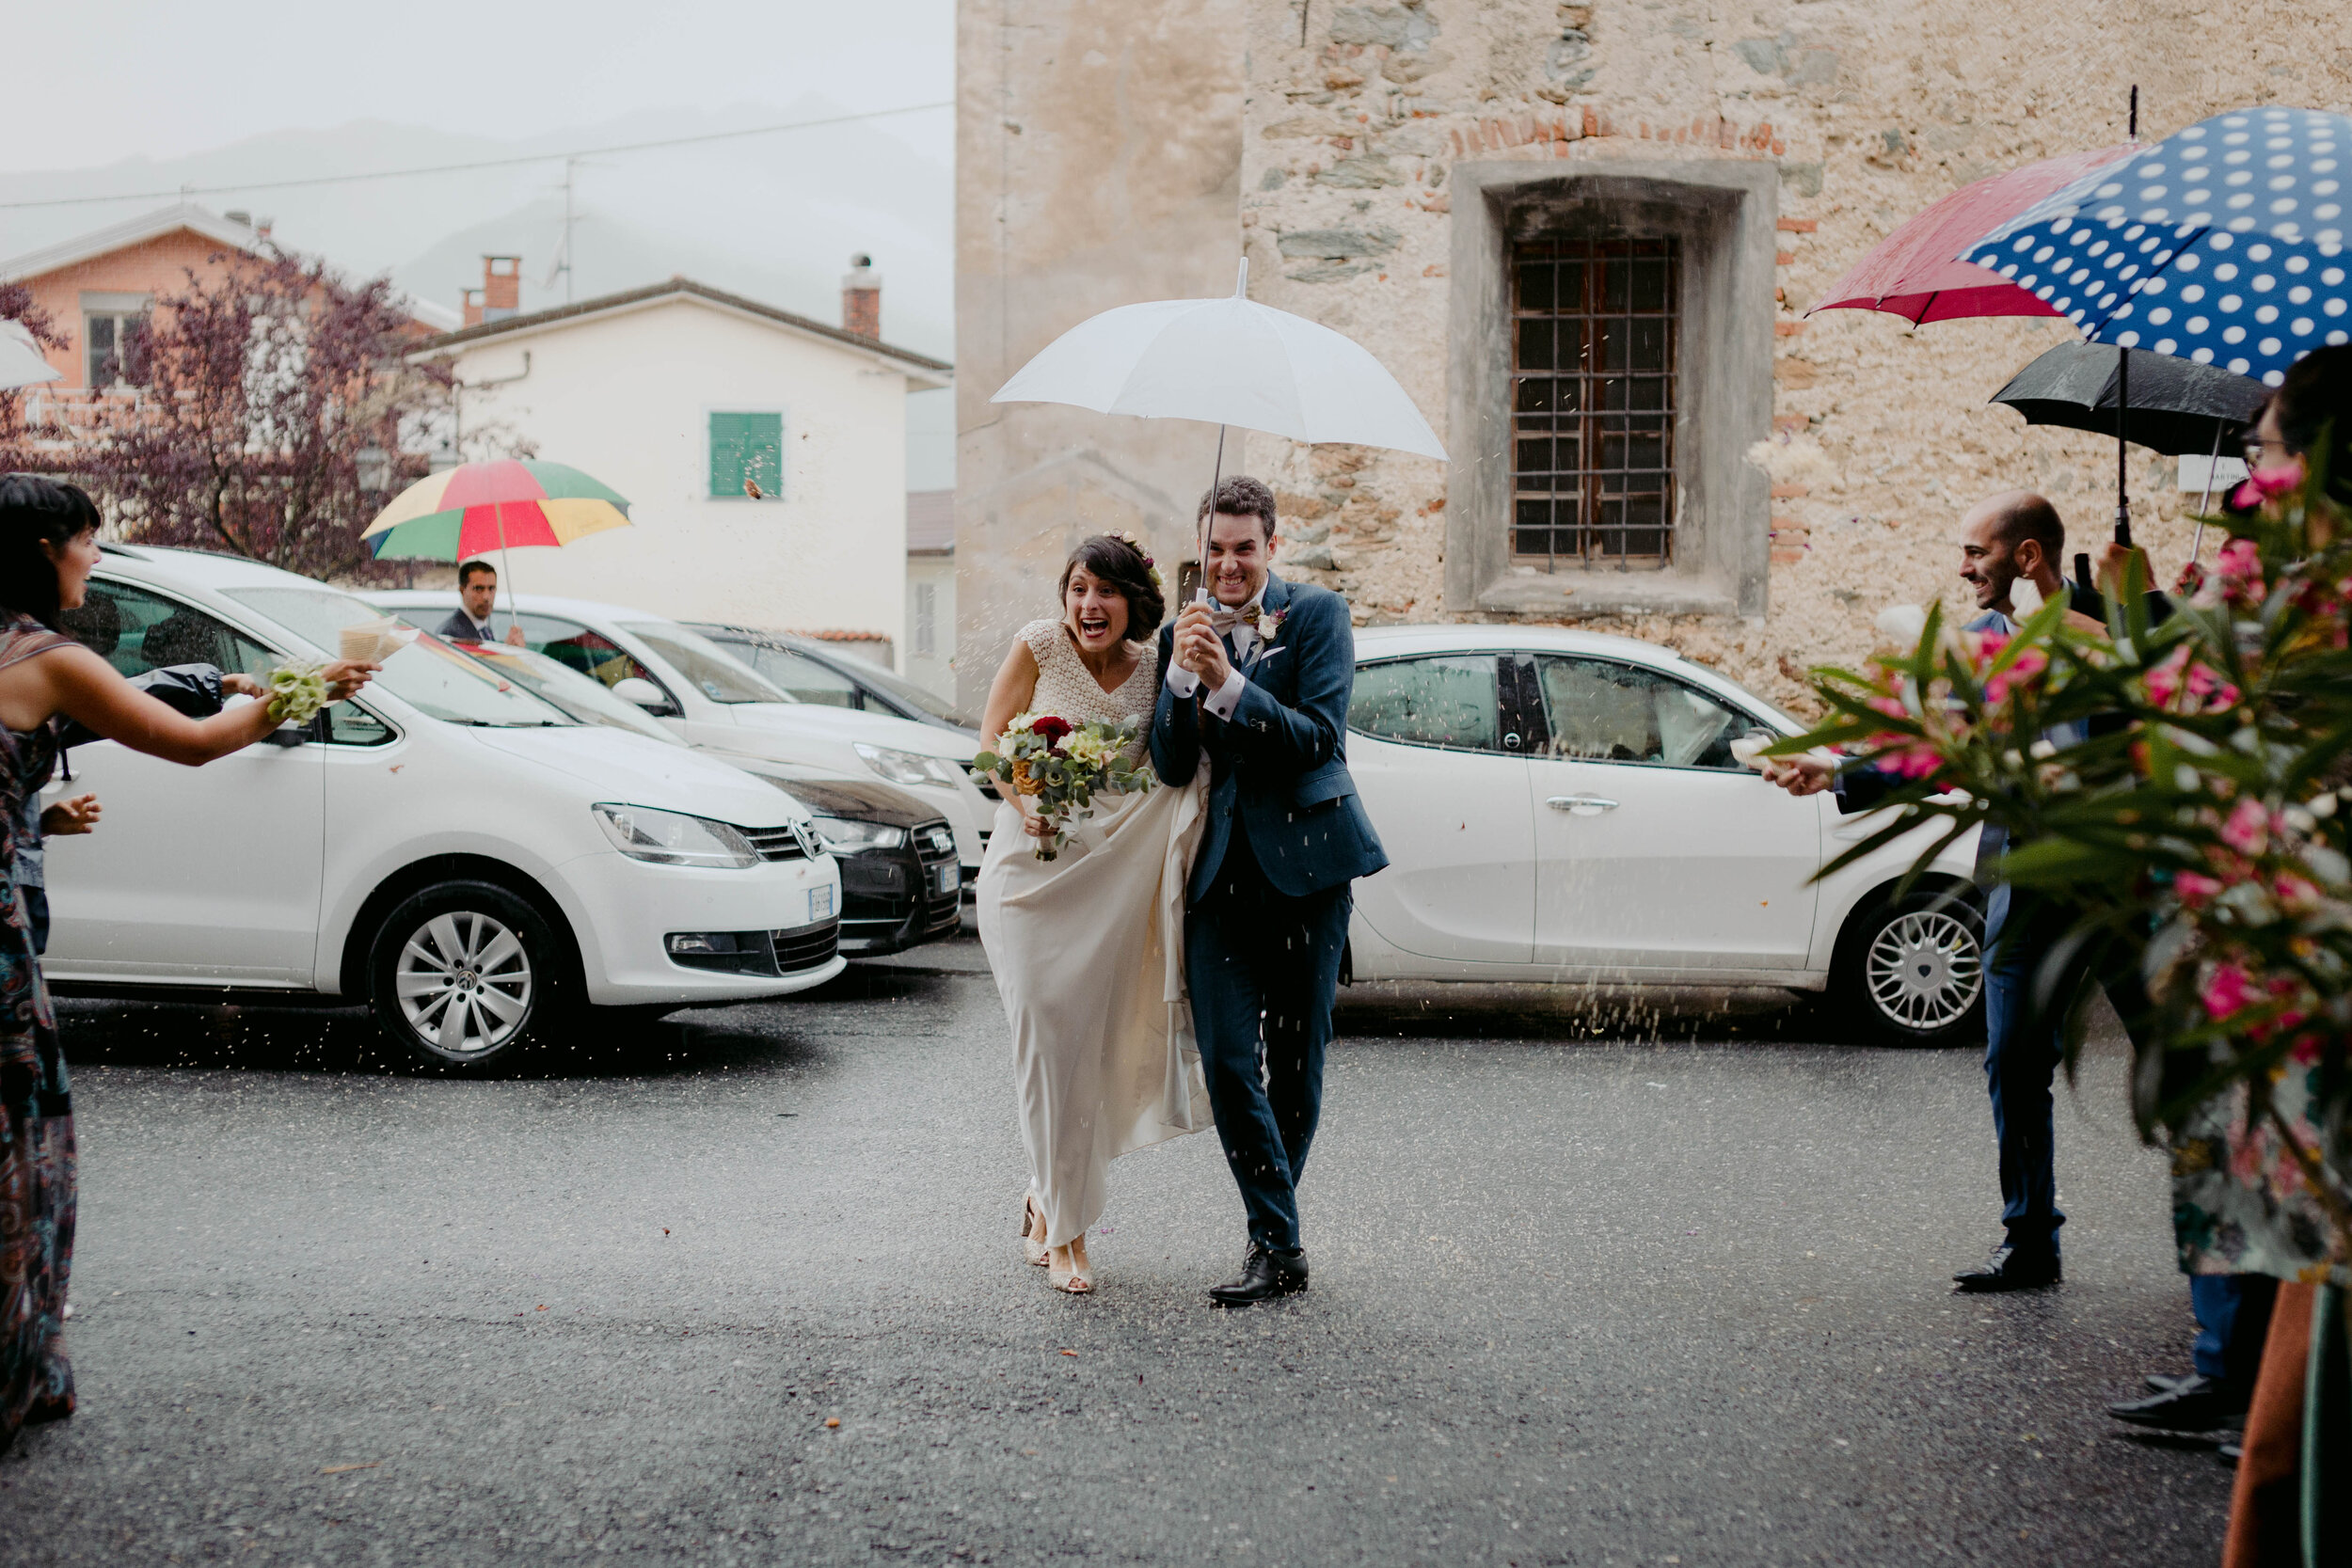 050 - Matrimonio in provincia di Cuneo - Miriam Callegari Fotografa.JPG